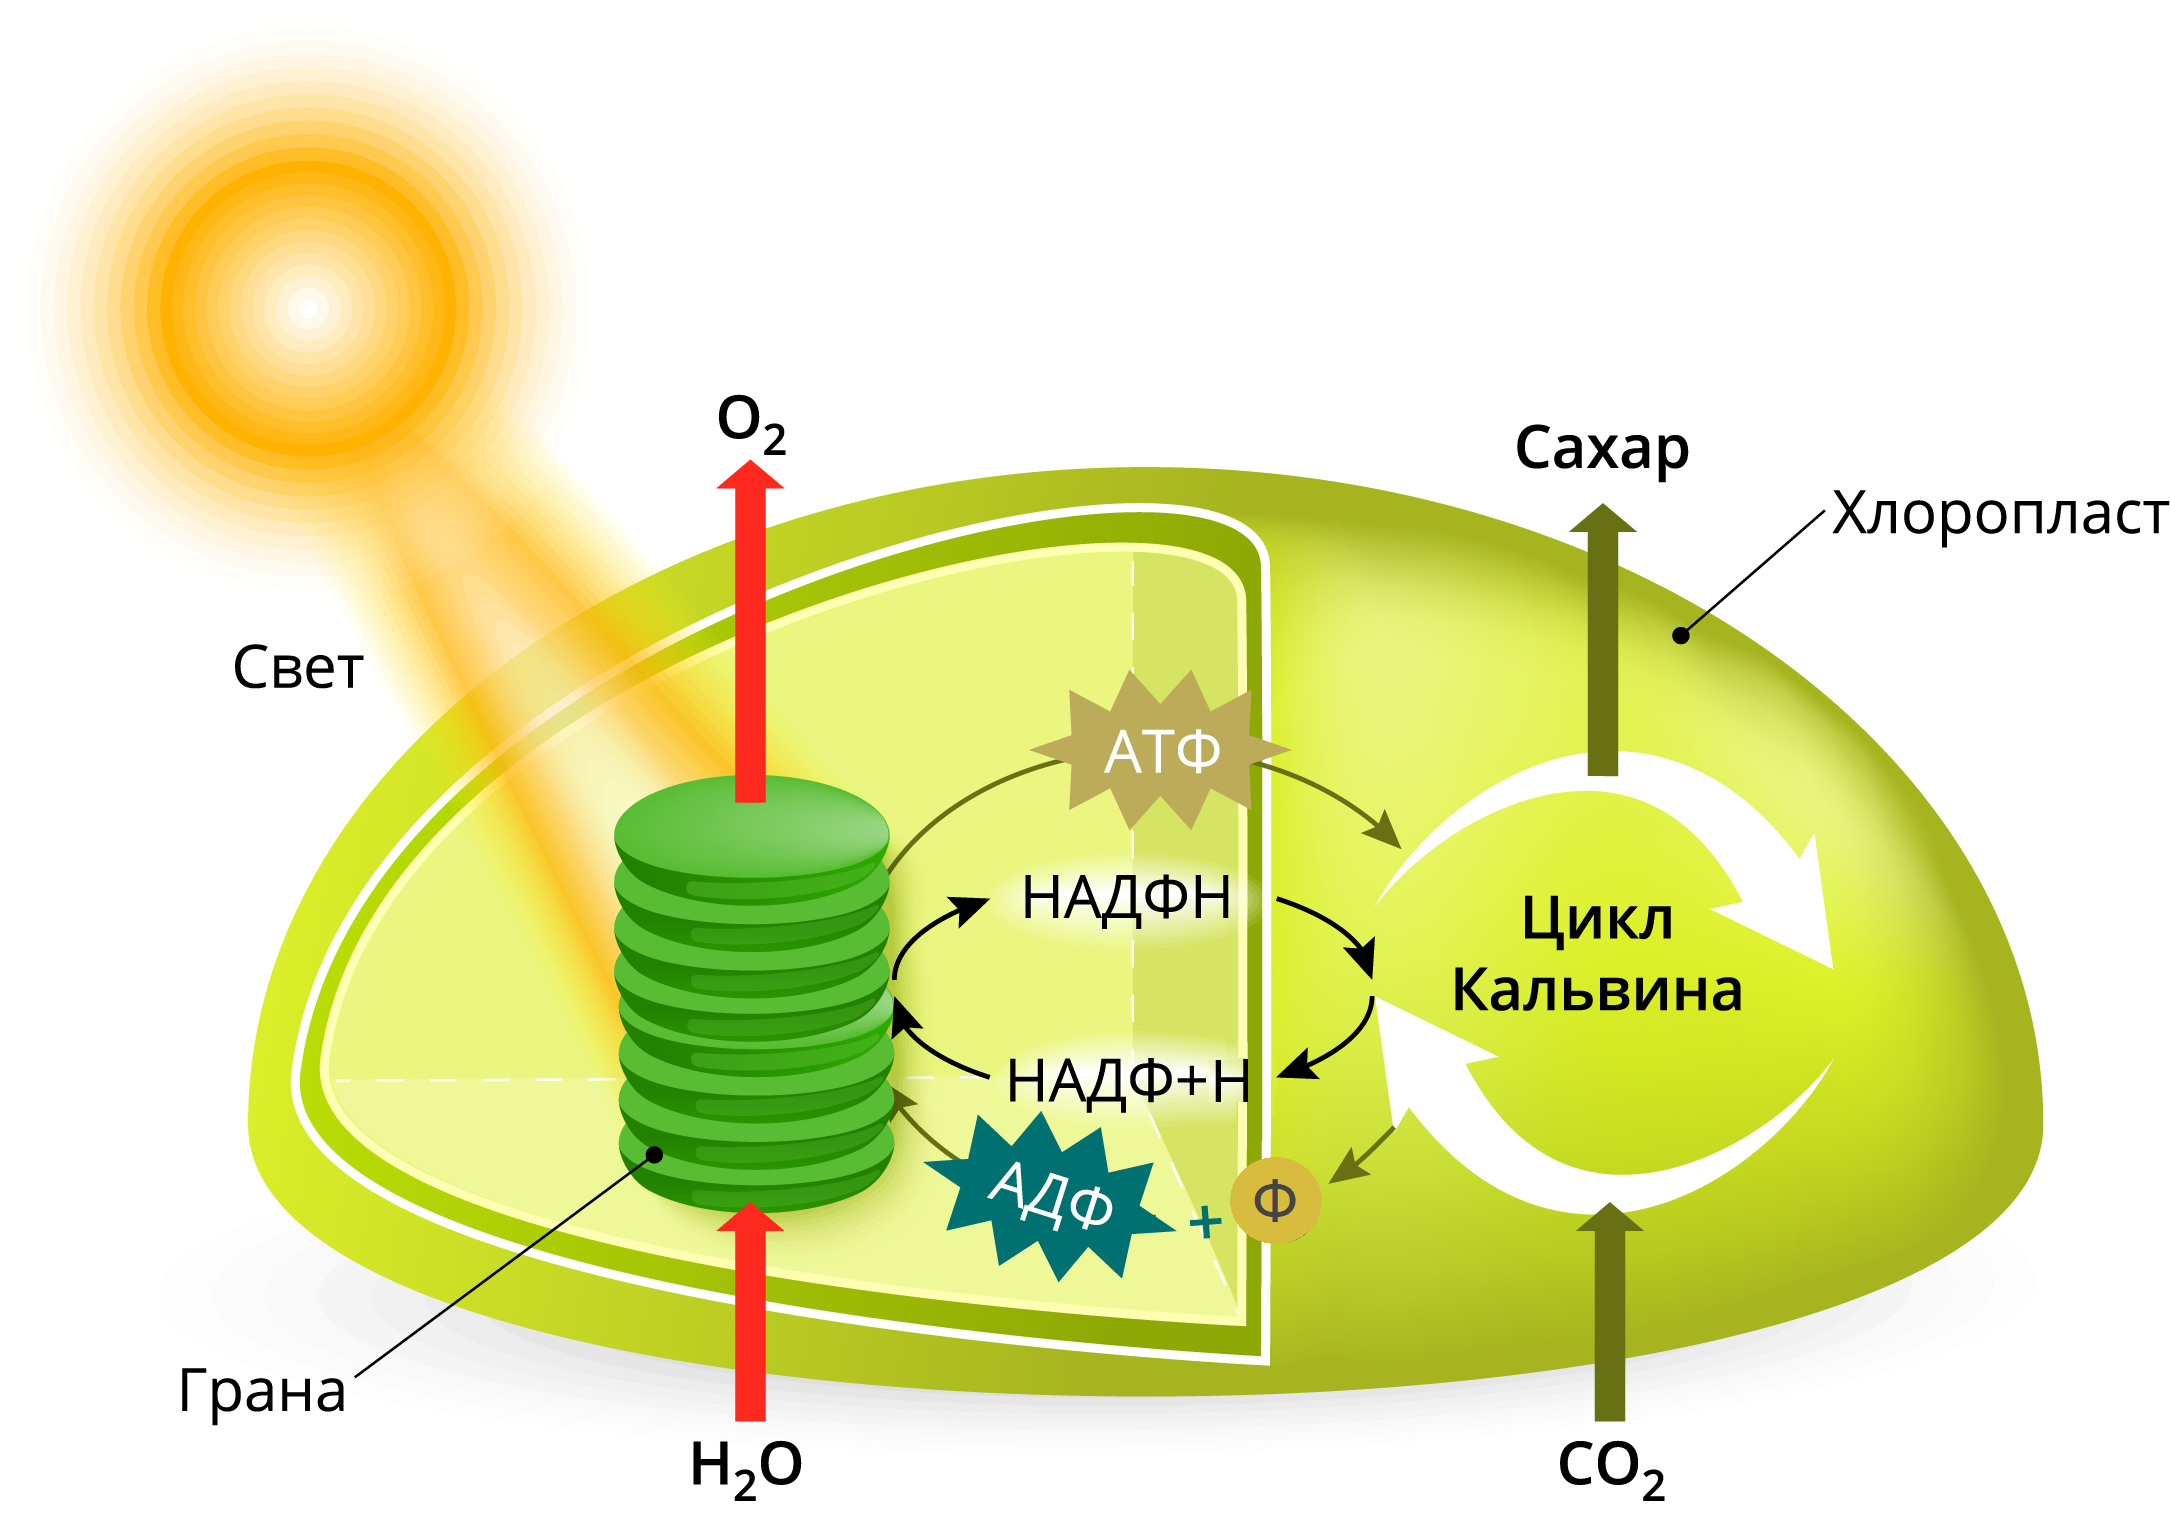 Цикл кальвина происходит в хлоропласта. Отоинтез Хема на хлоропласте. Процесс фотосинтеза в хлоропластах. Схема фотосинтеза в хлоропласте. Процесс фотосинтеза в хлоропластах схема.